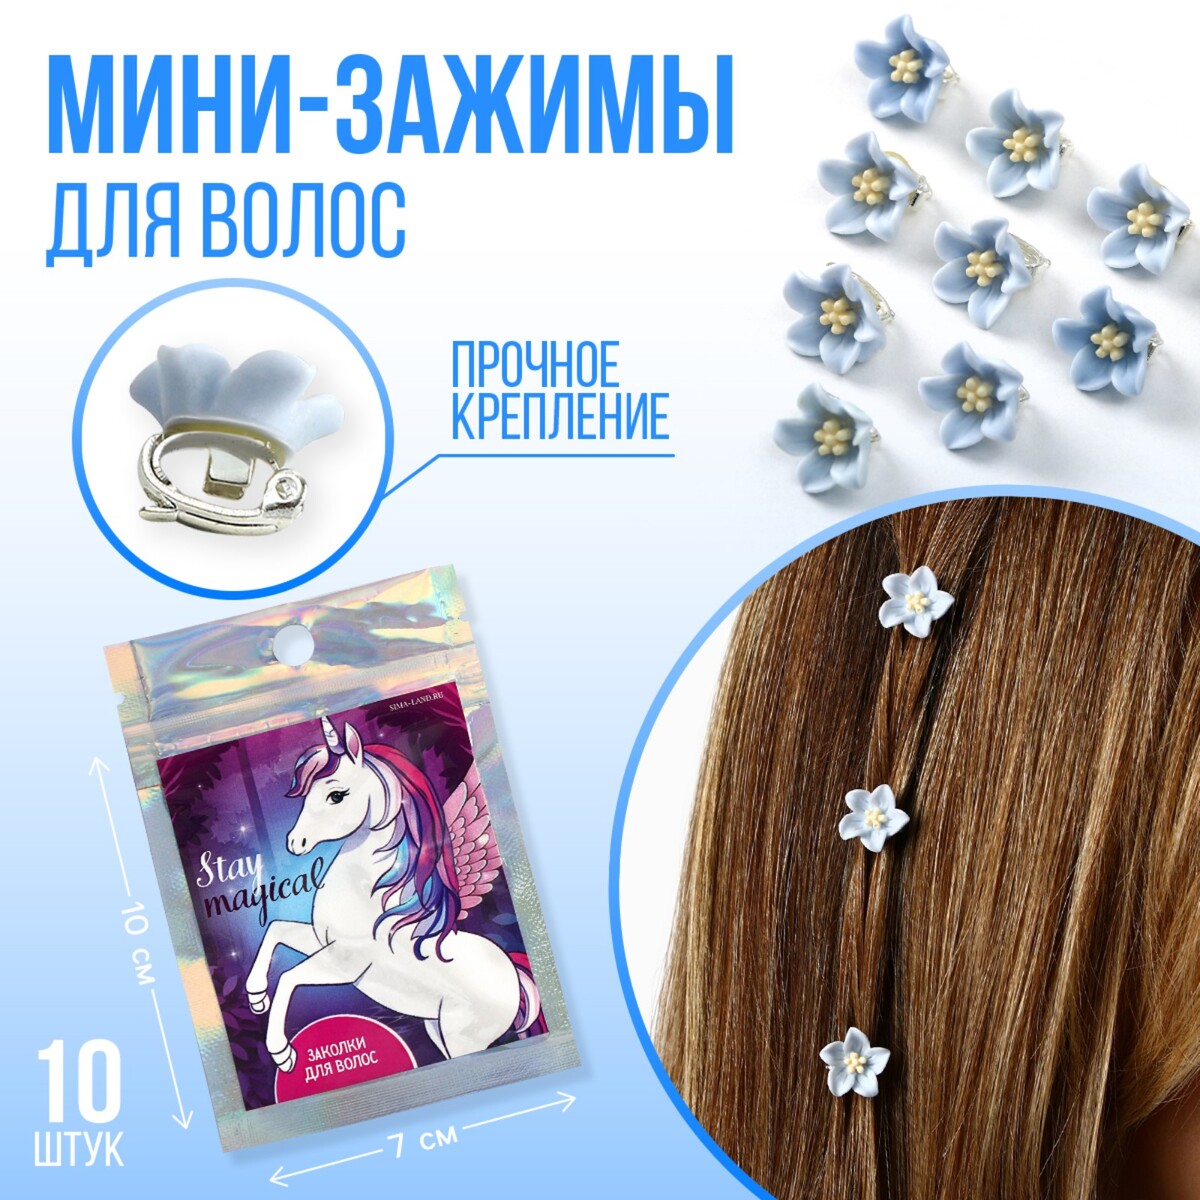 Набор мини-зажимов для украшения волос stay magical, 10 шт., 1.3 х 1.3 х 1.5 см комплект аксессуаров волос расческа резинка